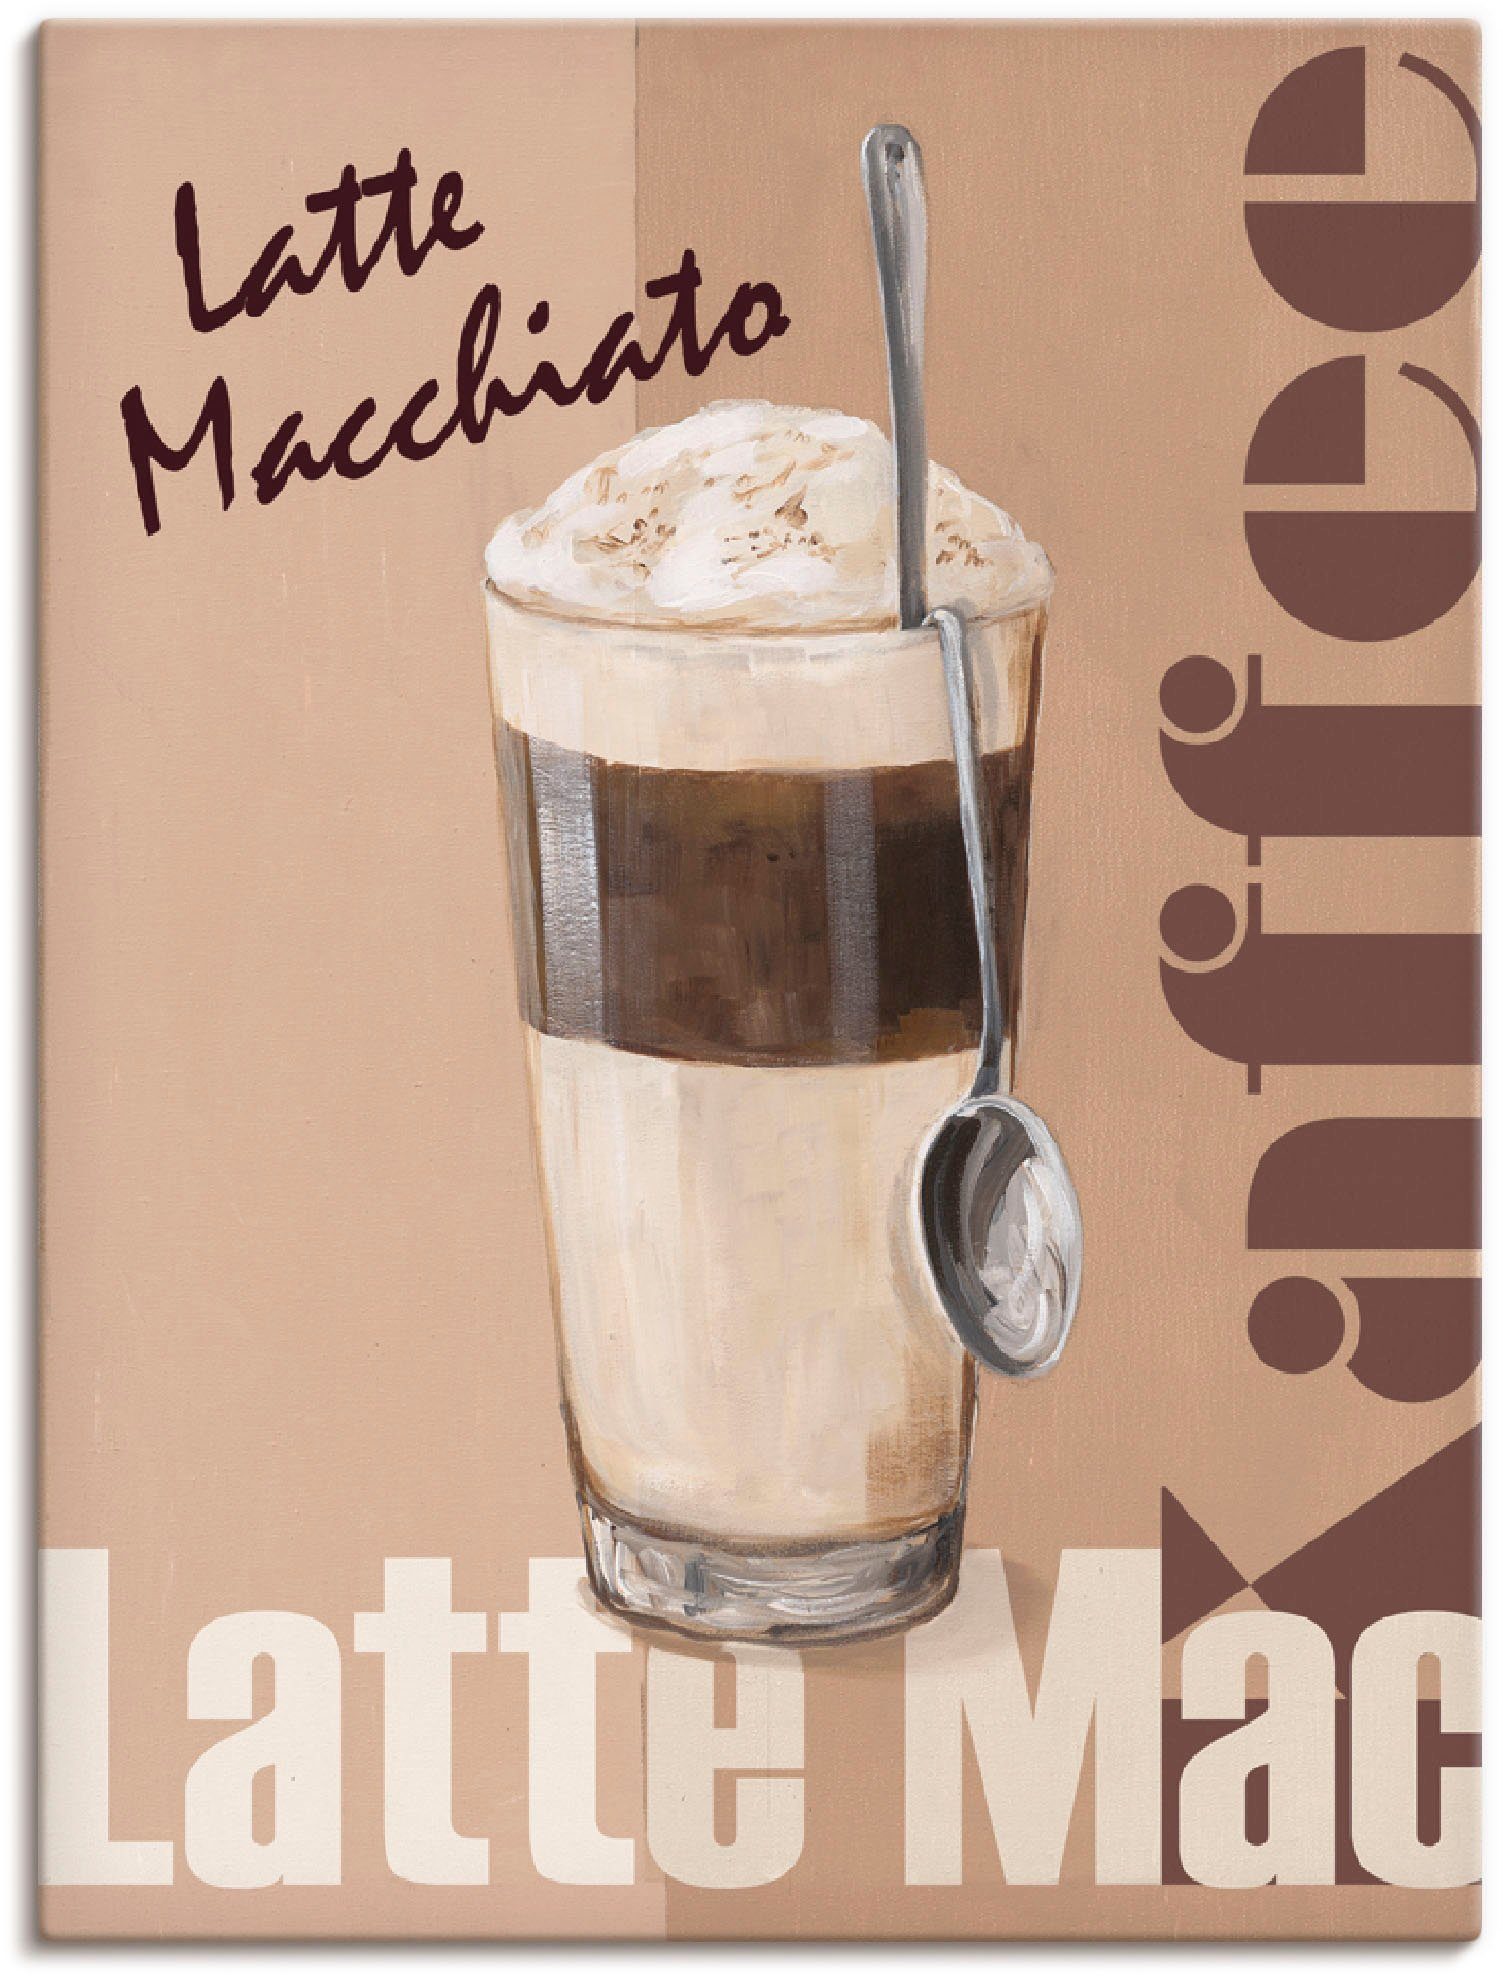 Artland Artprint Latte macchiato - koffie in vele afmetingen & productsoorten -artprint op linnen, poster, muursticker / wandfolie ook geschikt voor de badkamer (1 stuk)